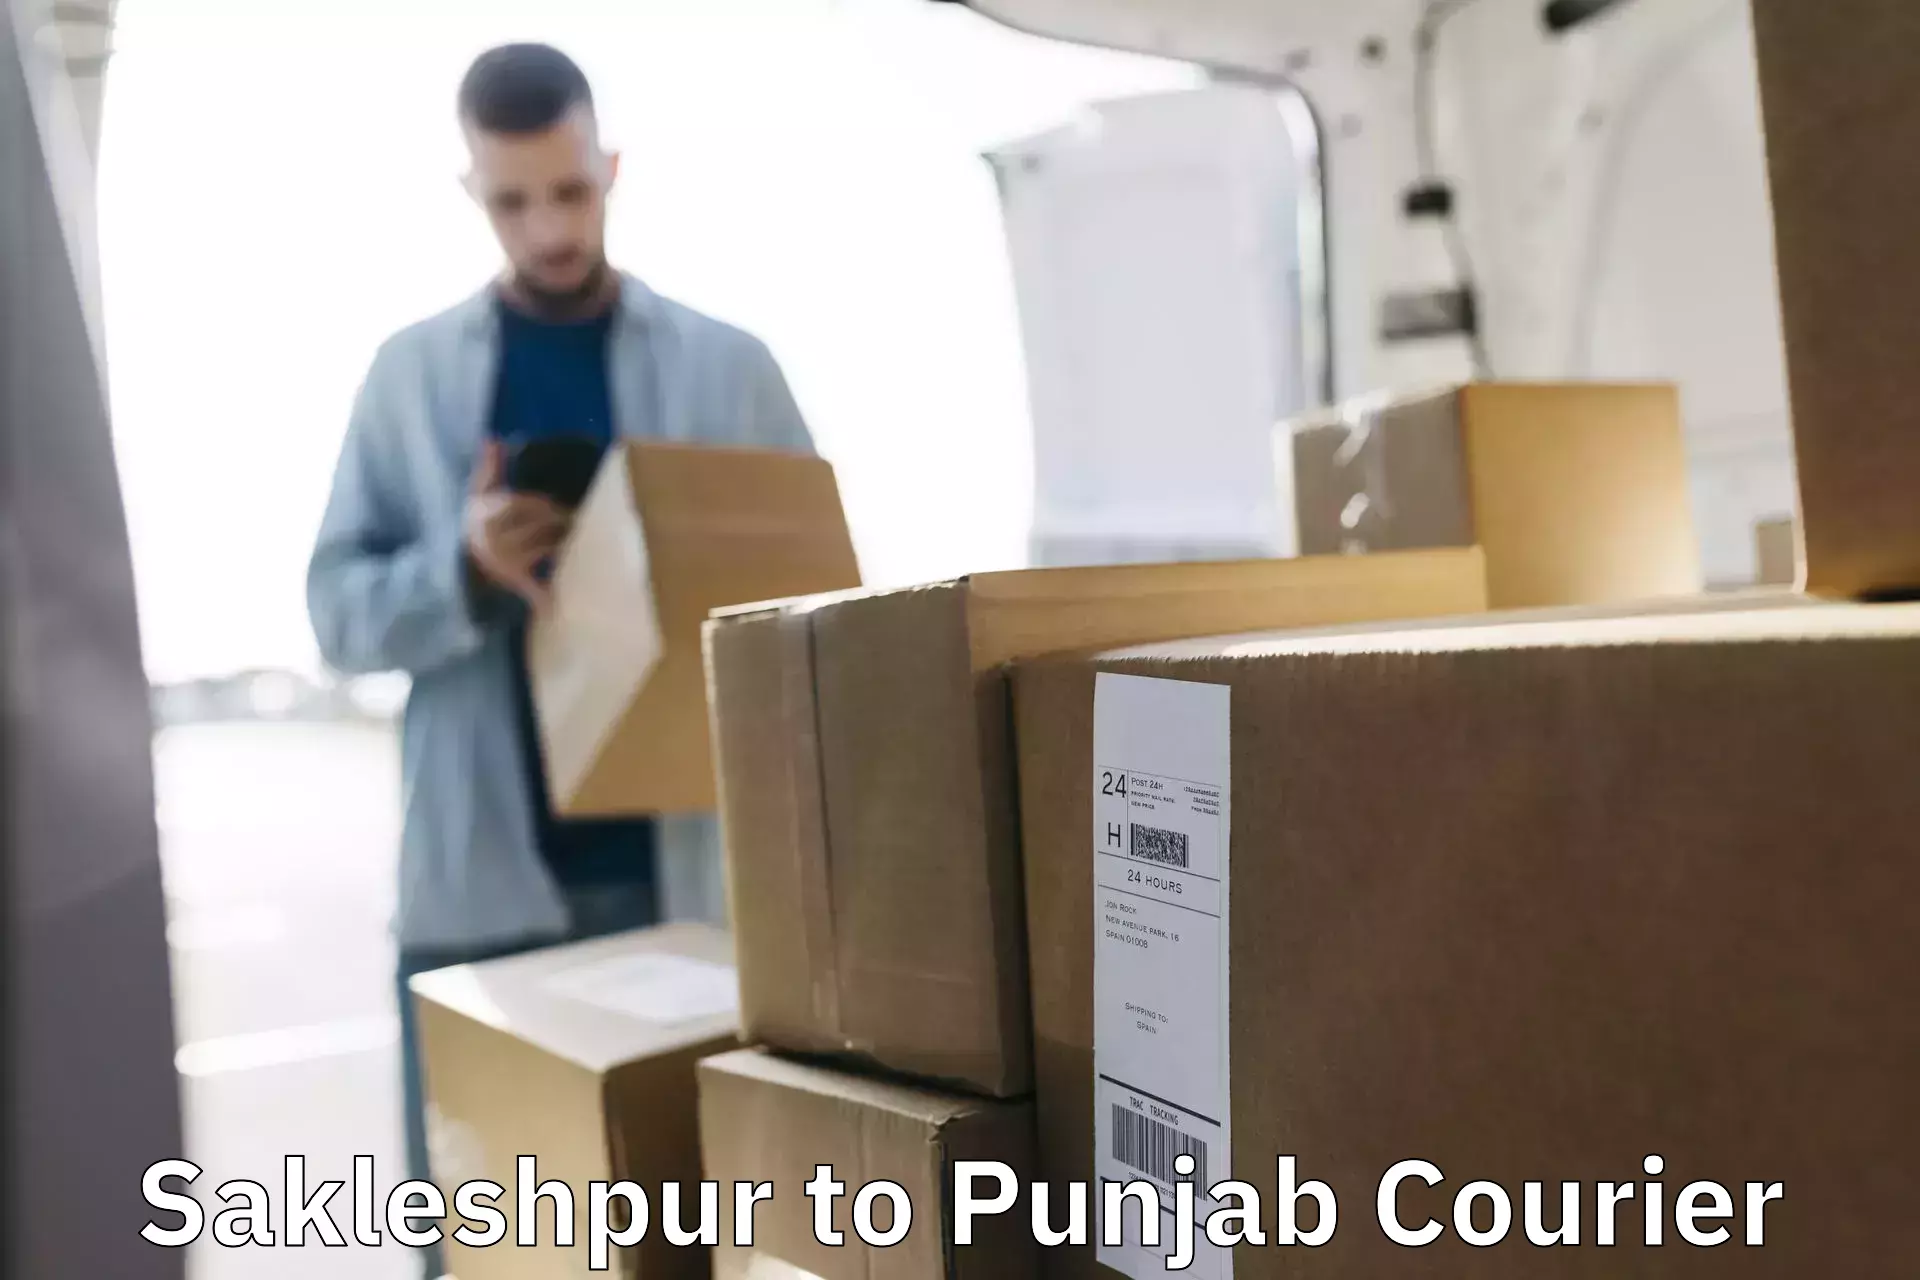 Individual parcel service Sakleshpur to Punjab